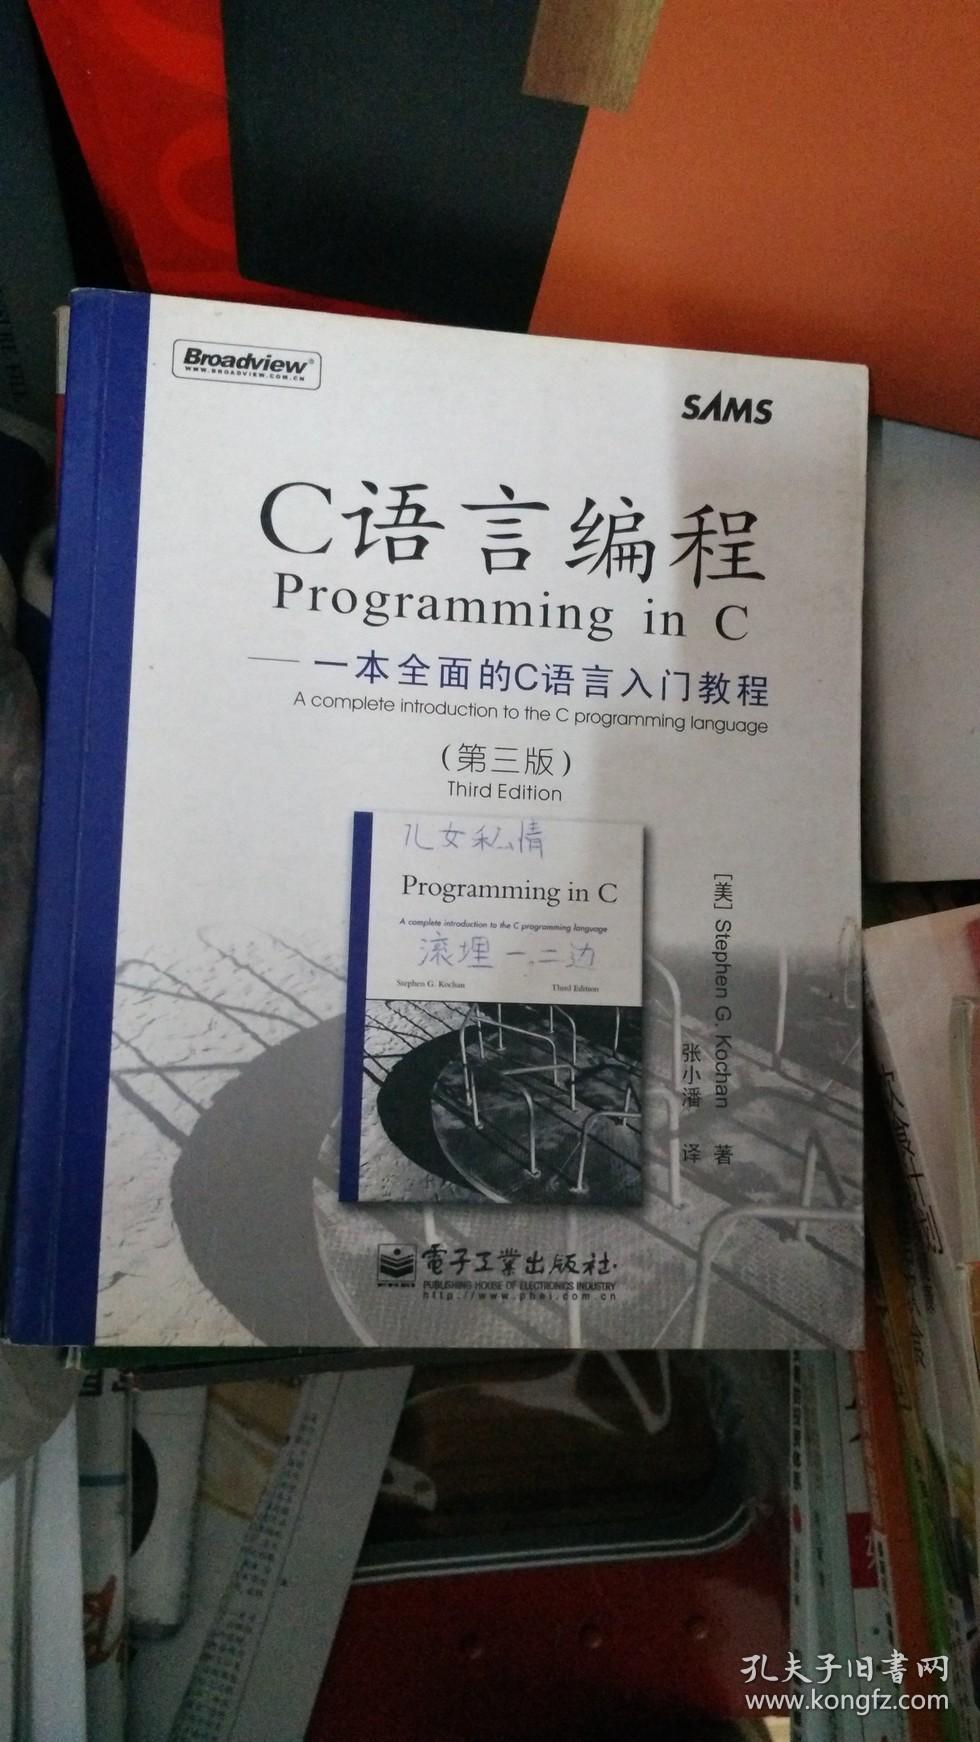 C语言编程:一本全面的C语言入门教程(第3版)